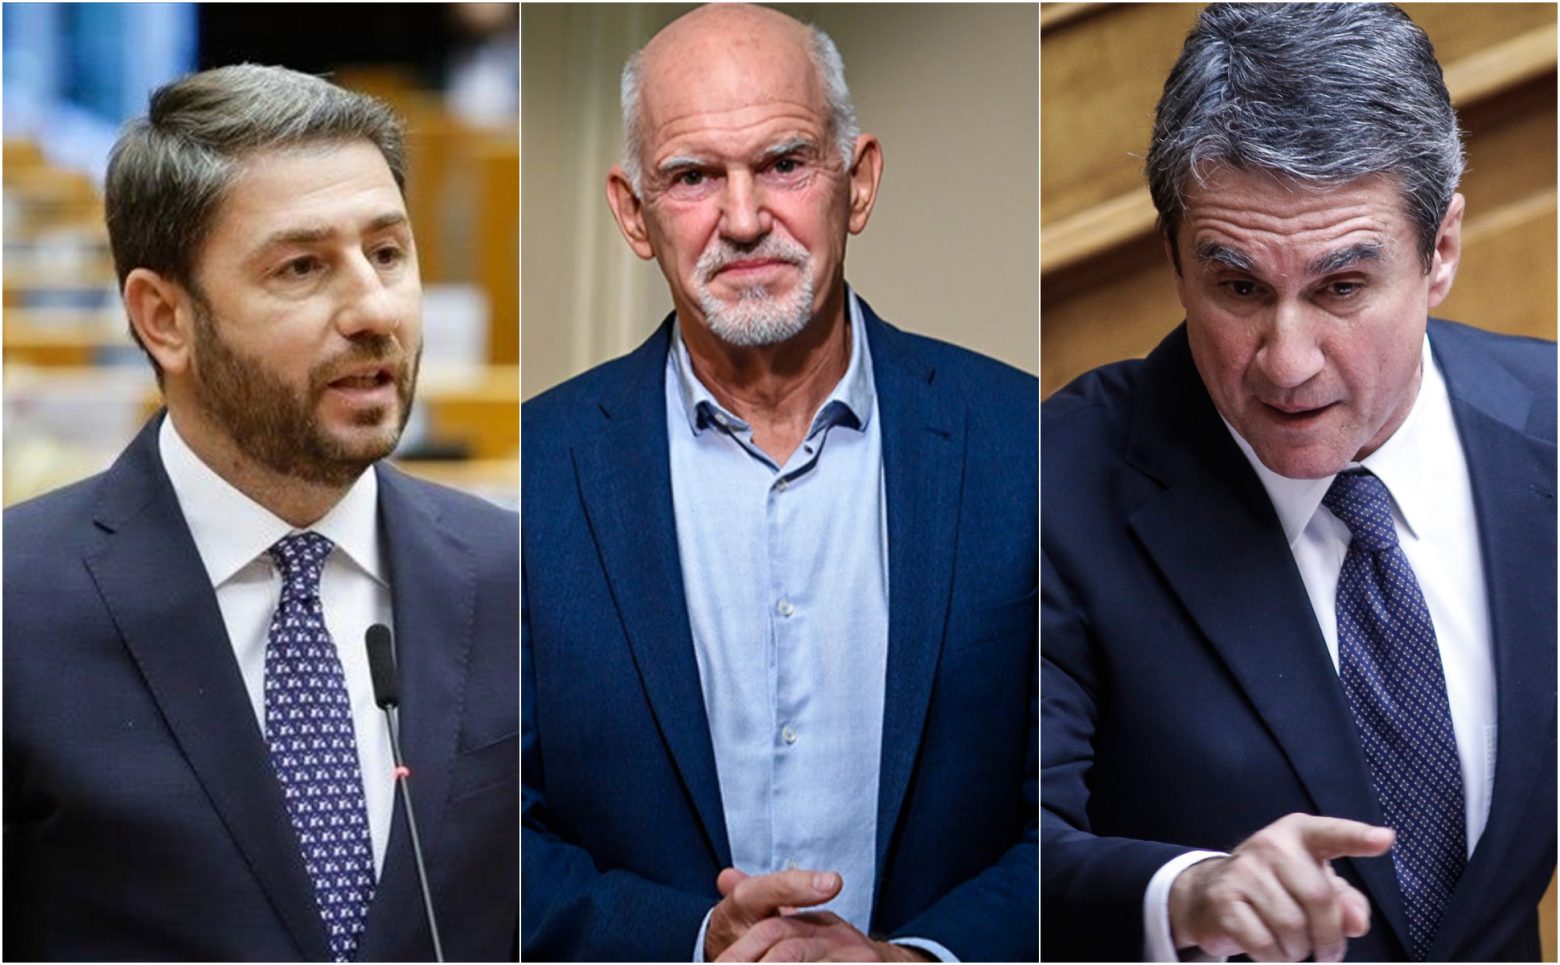 Αndroulakis in first place of KINAL party leadership race; George Papandreou second